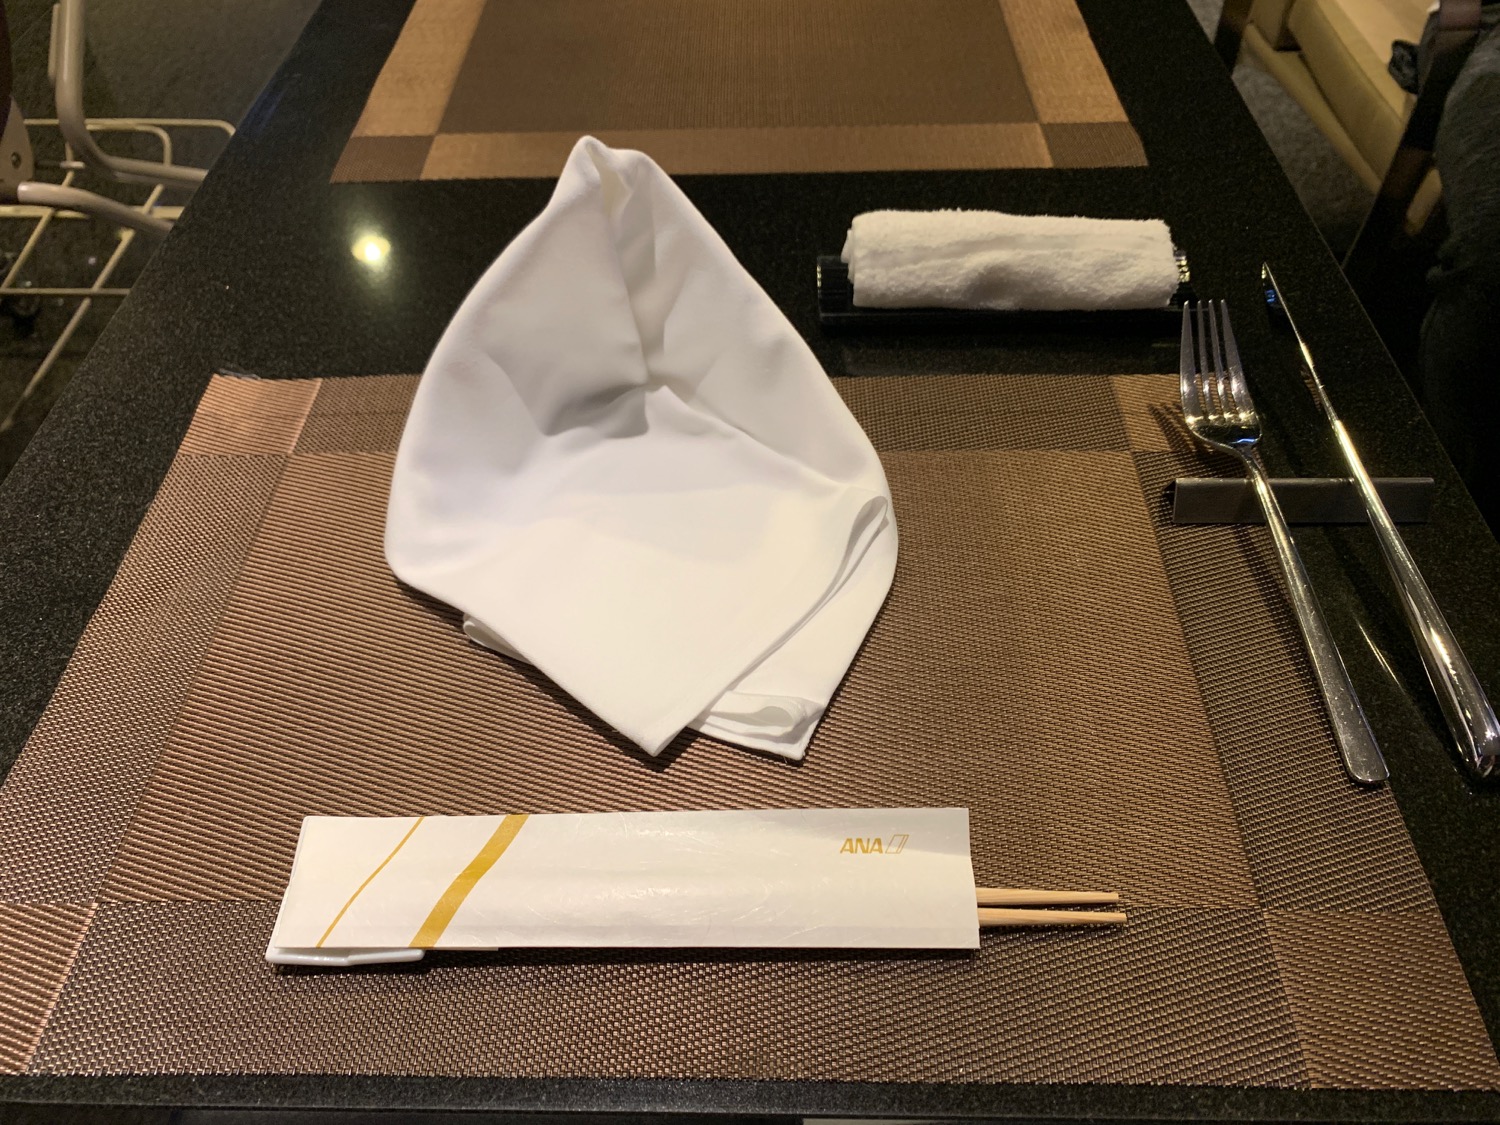 a napkin and chopsticks on a table